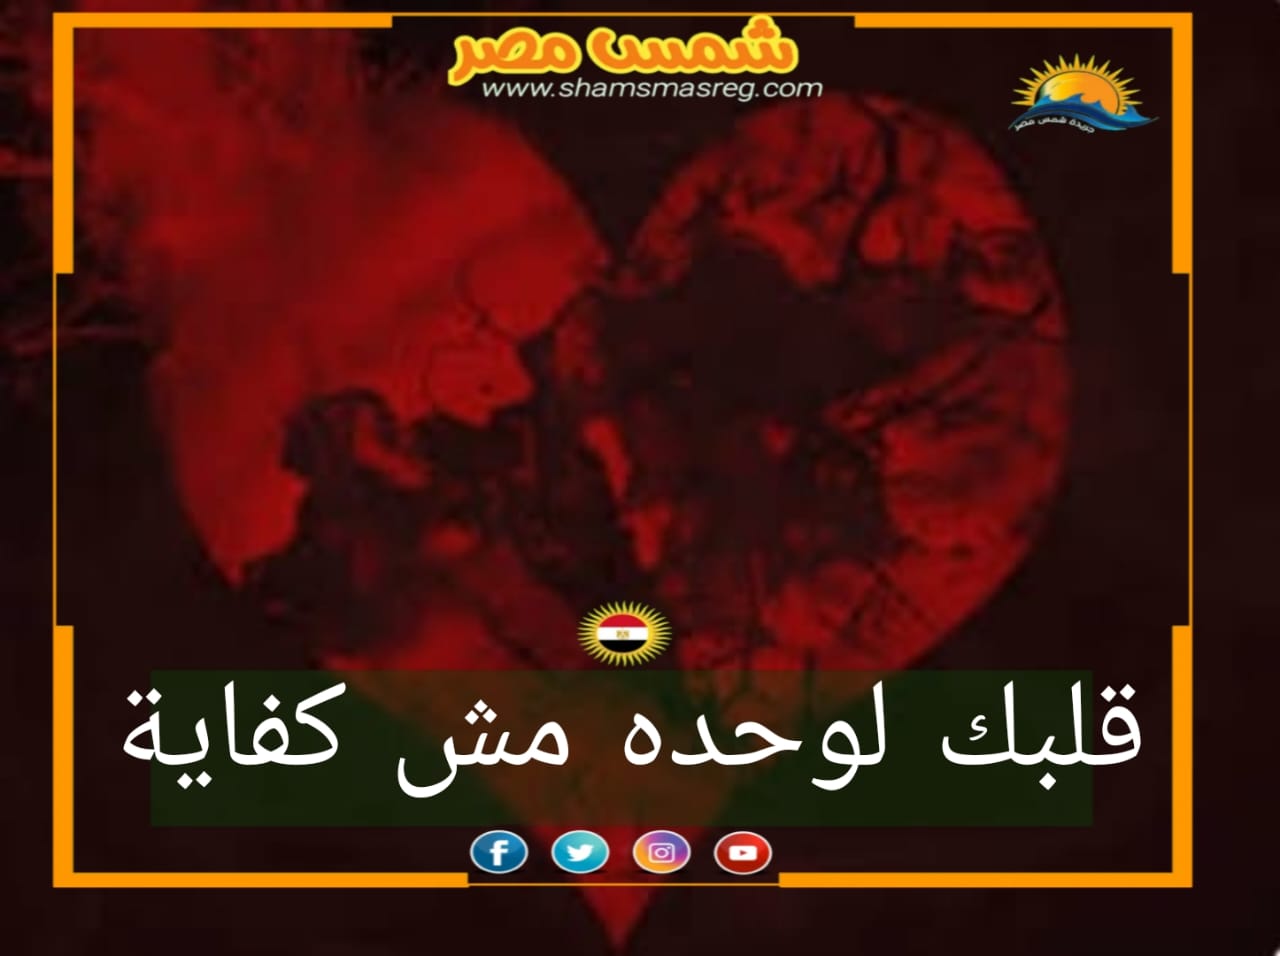 |شمس مصر|.. قلبك لوحده مش كفاية